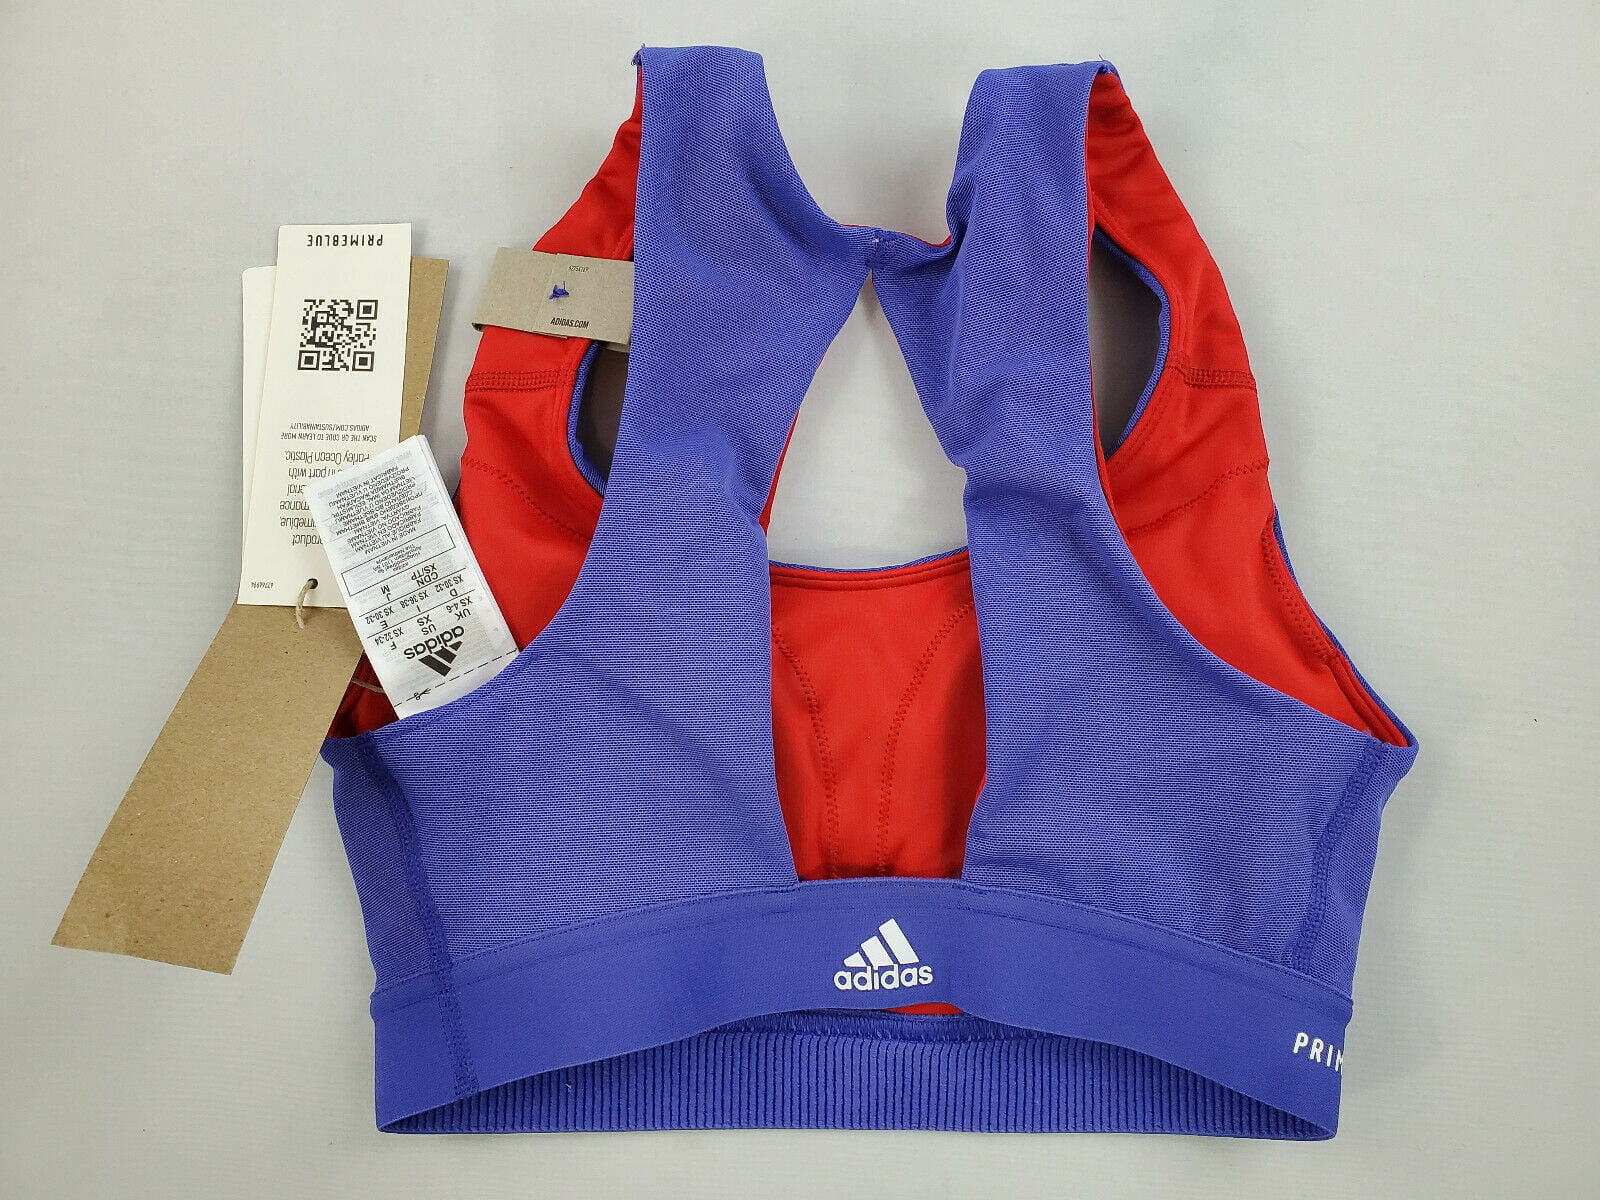 new Adidas sports bra padded top GL0617 BT2.0 PB 126936529 blue red sz XS  $50 